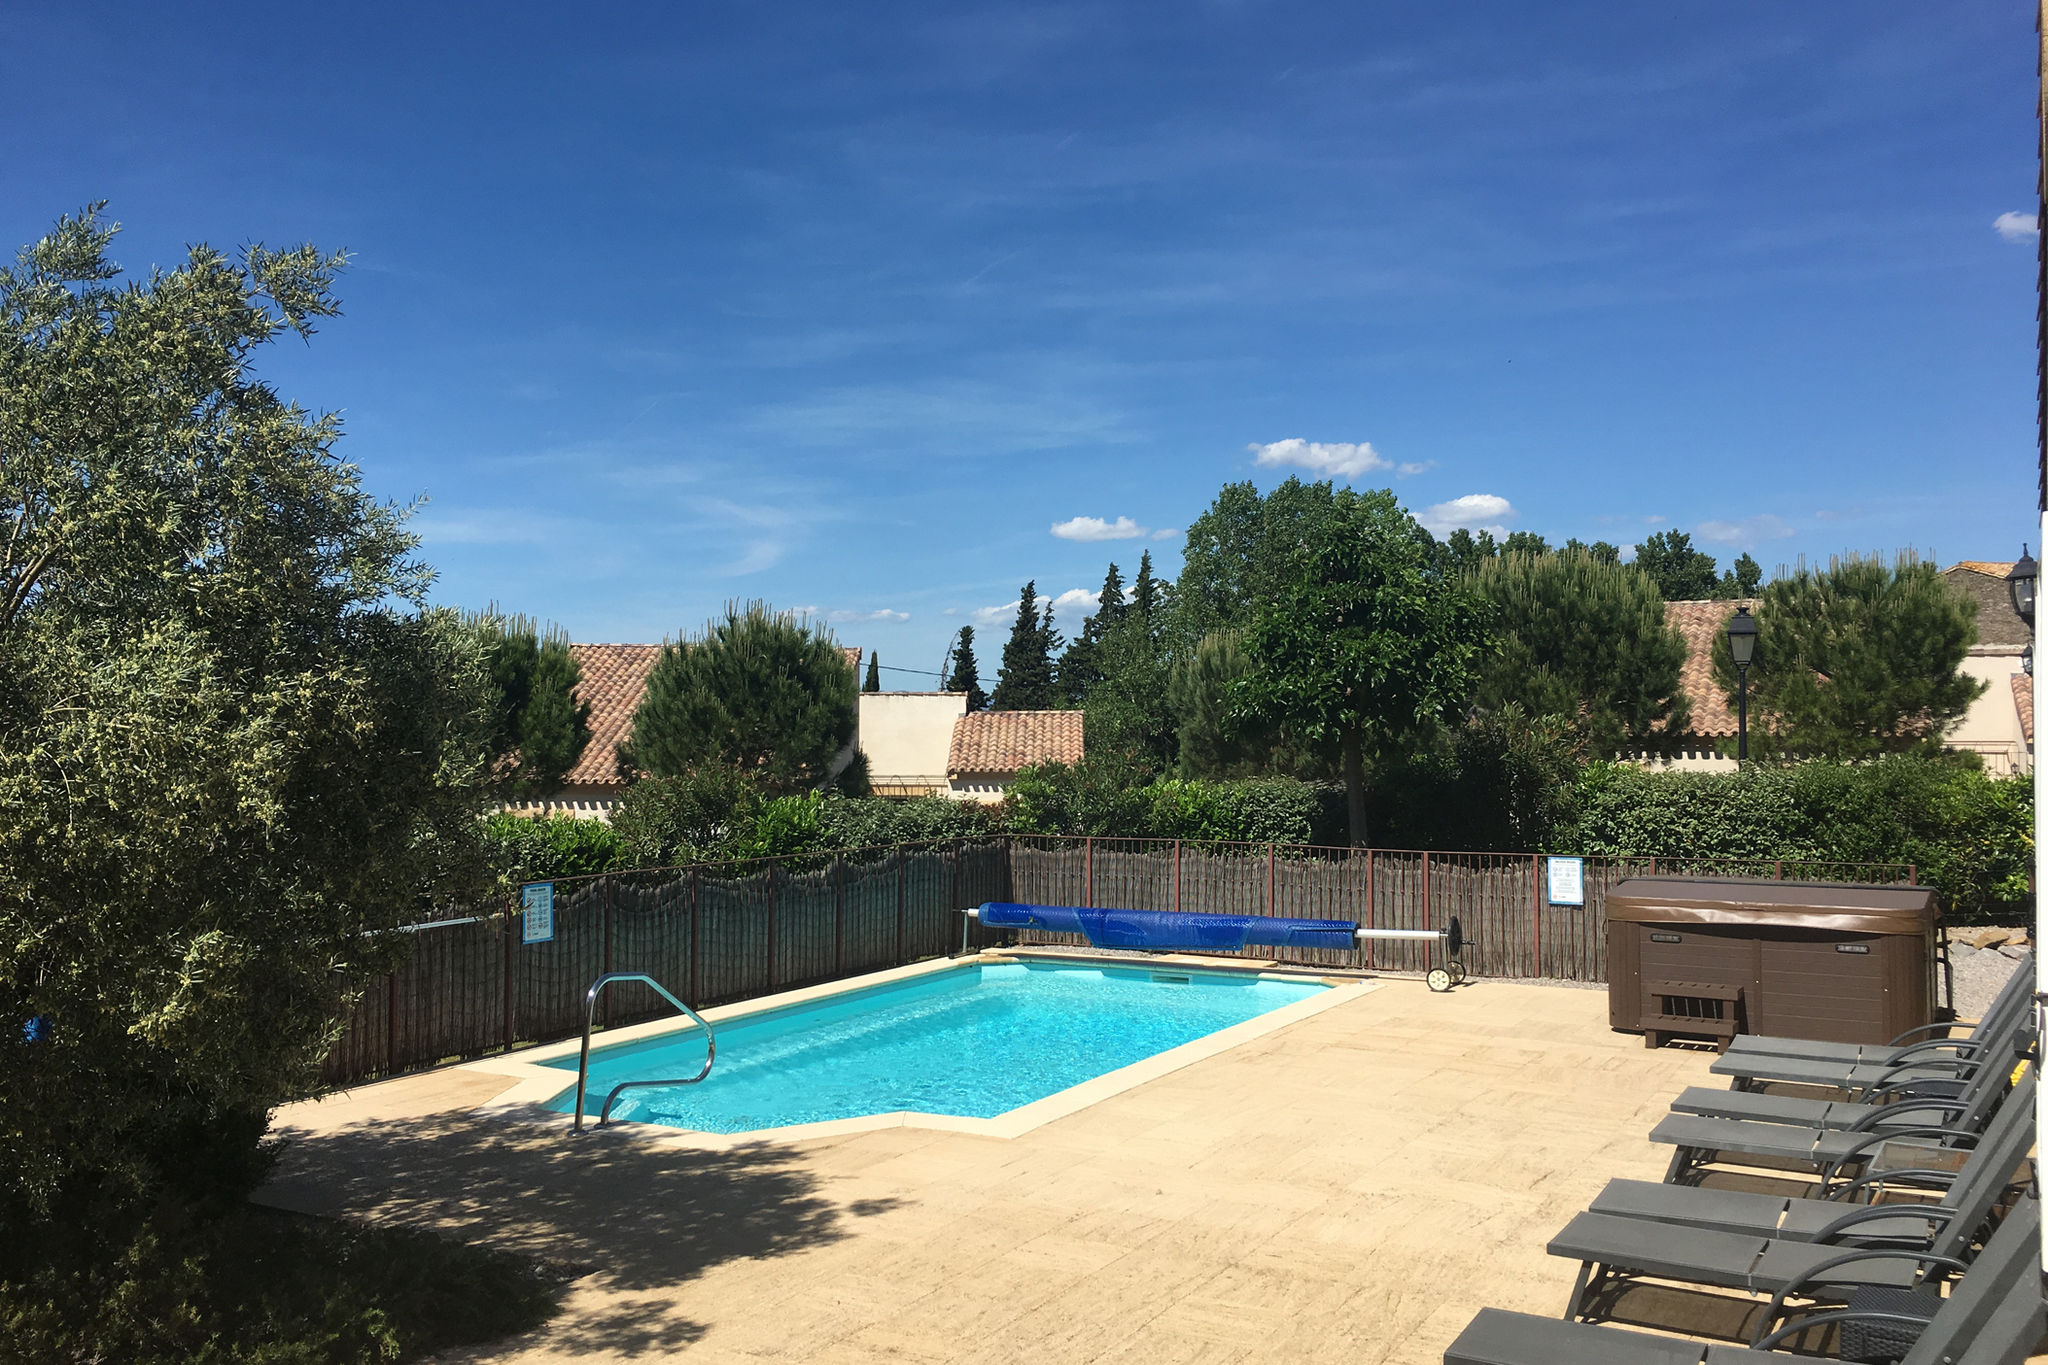 Vrijstaande villa in Zuid-Frankrijk met een verwarmd privézwembad, jacuzzi, NL TV, Airco, Wifi